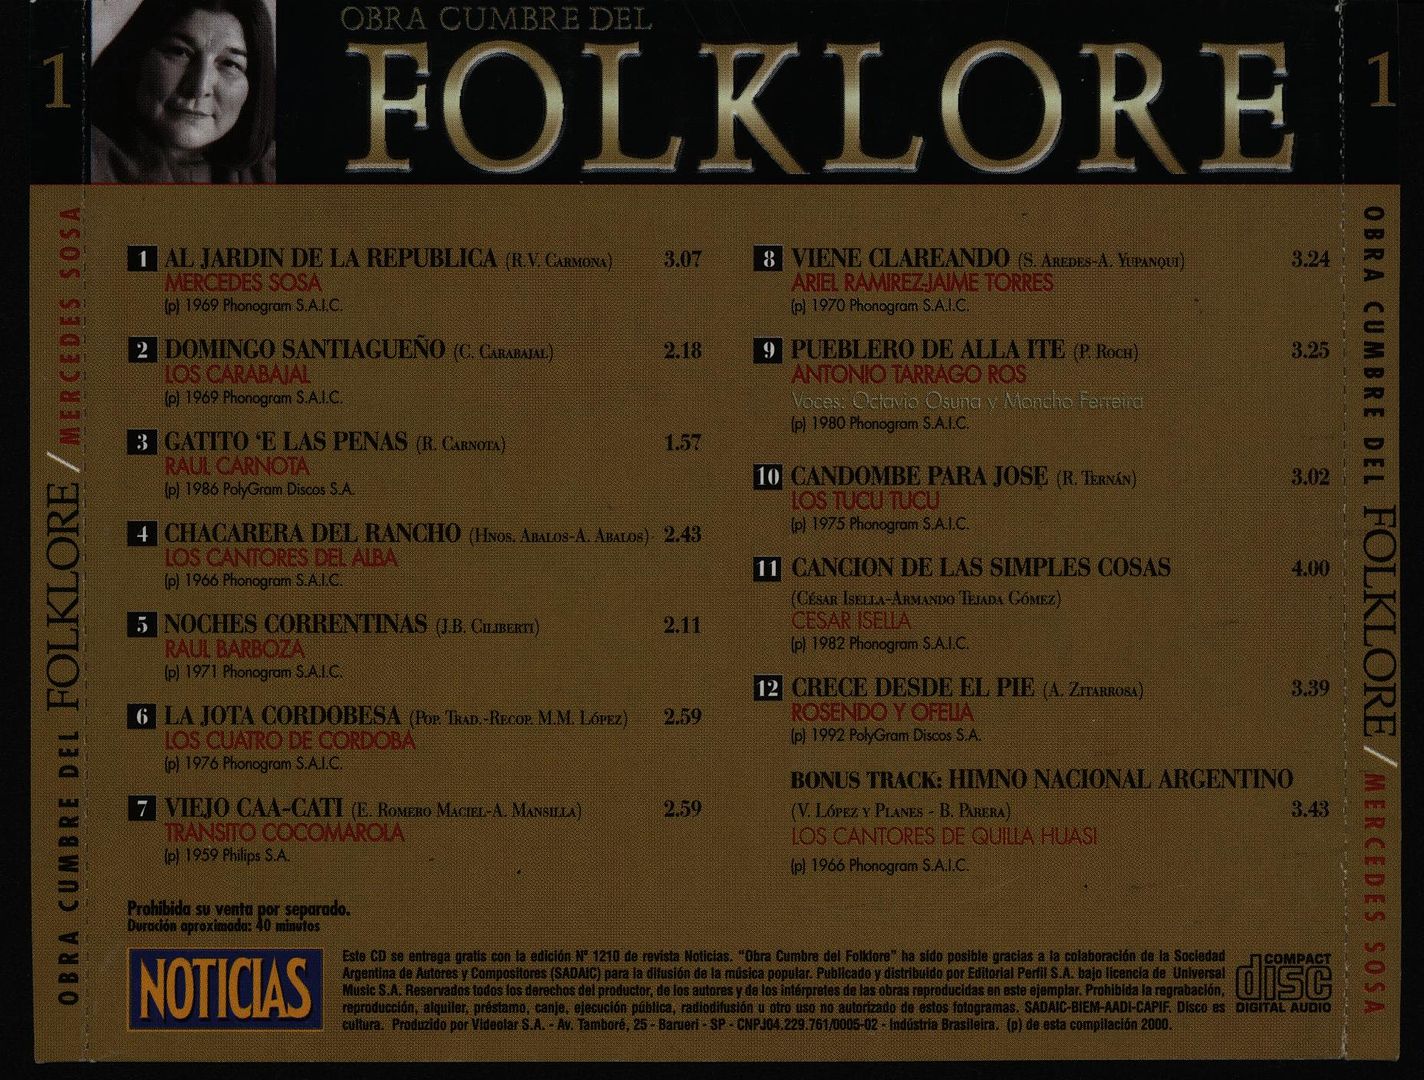 Back 7 - Obras Cumbres Del Folklore Vol.1 VA MP3